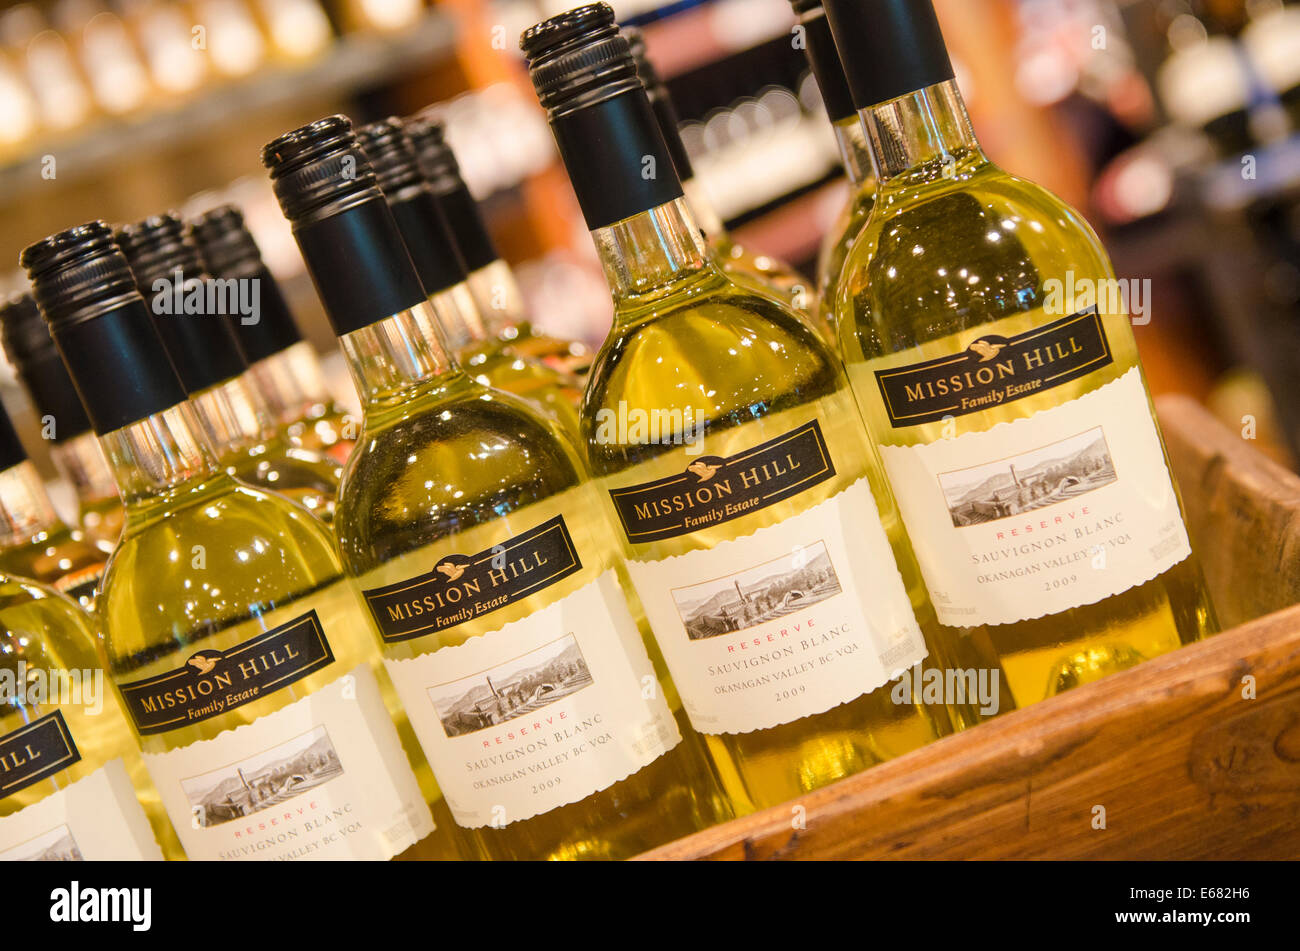 Flaschen Weißwein auf Mission Hill Family Estate Weine Okanagan Valley, Kelowna, innen Britisch-Kolumbien, BC, Kanada. Stockfoto